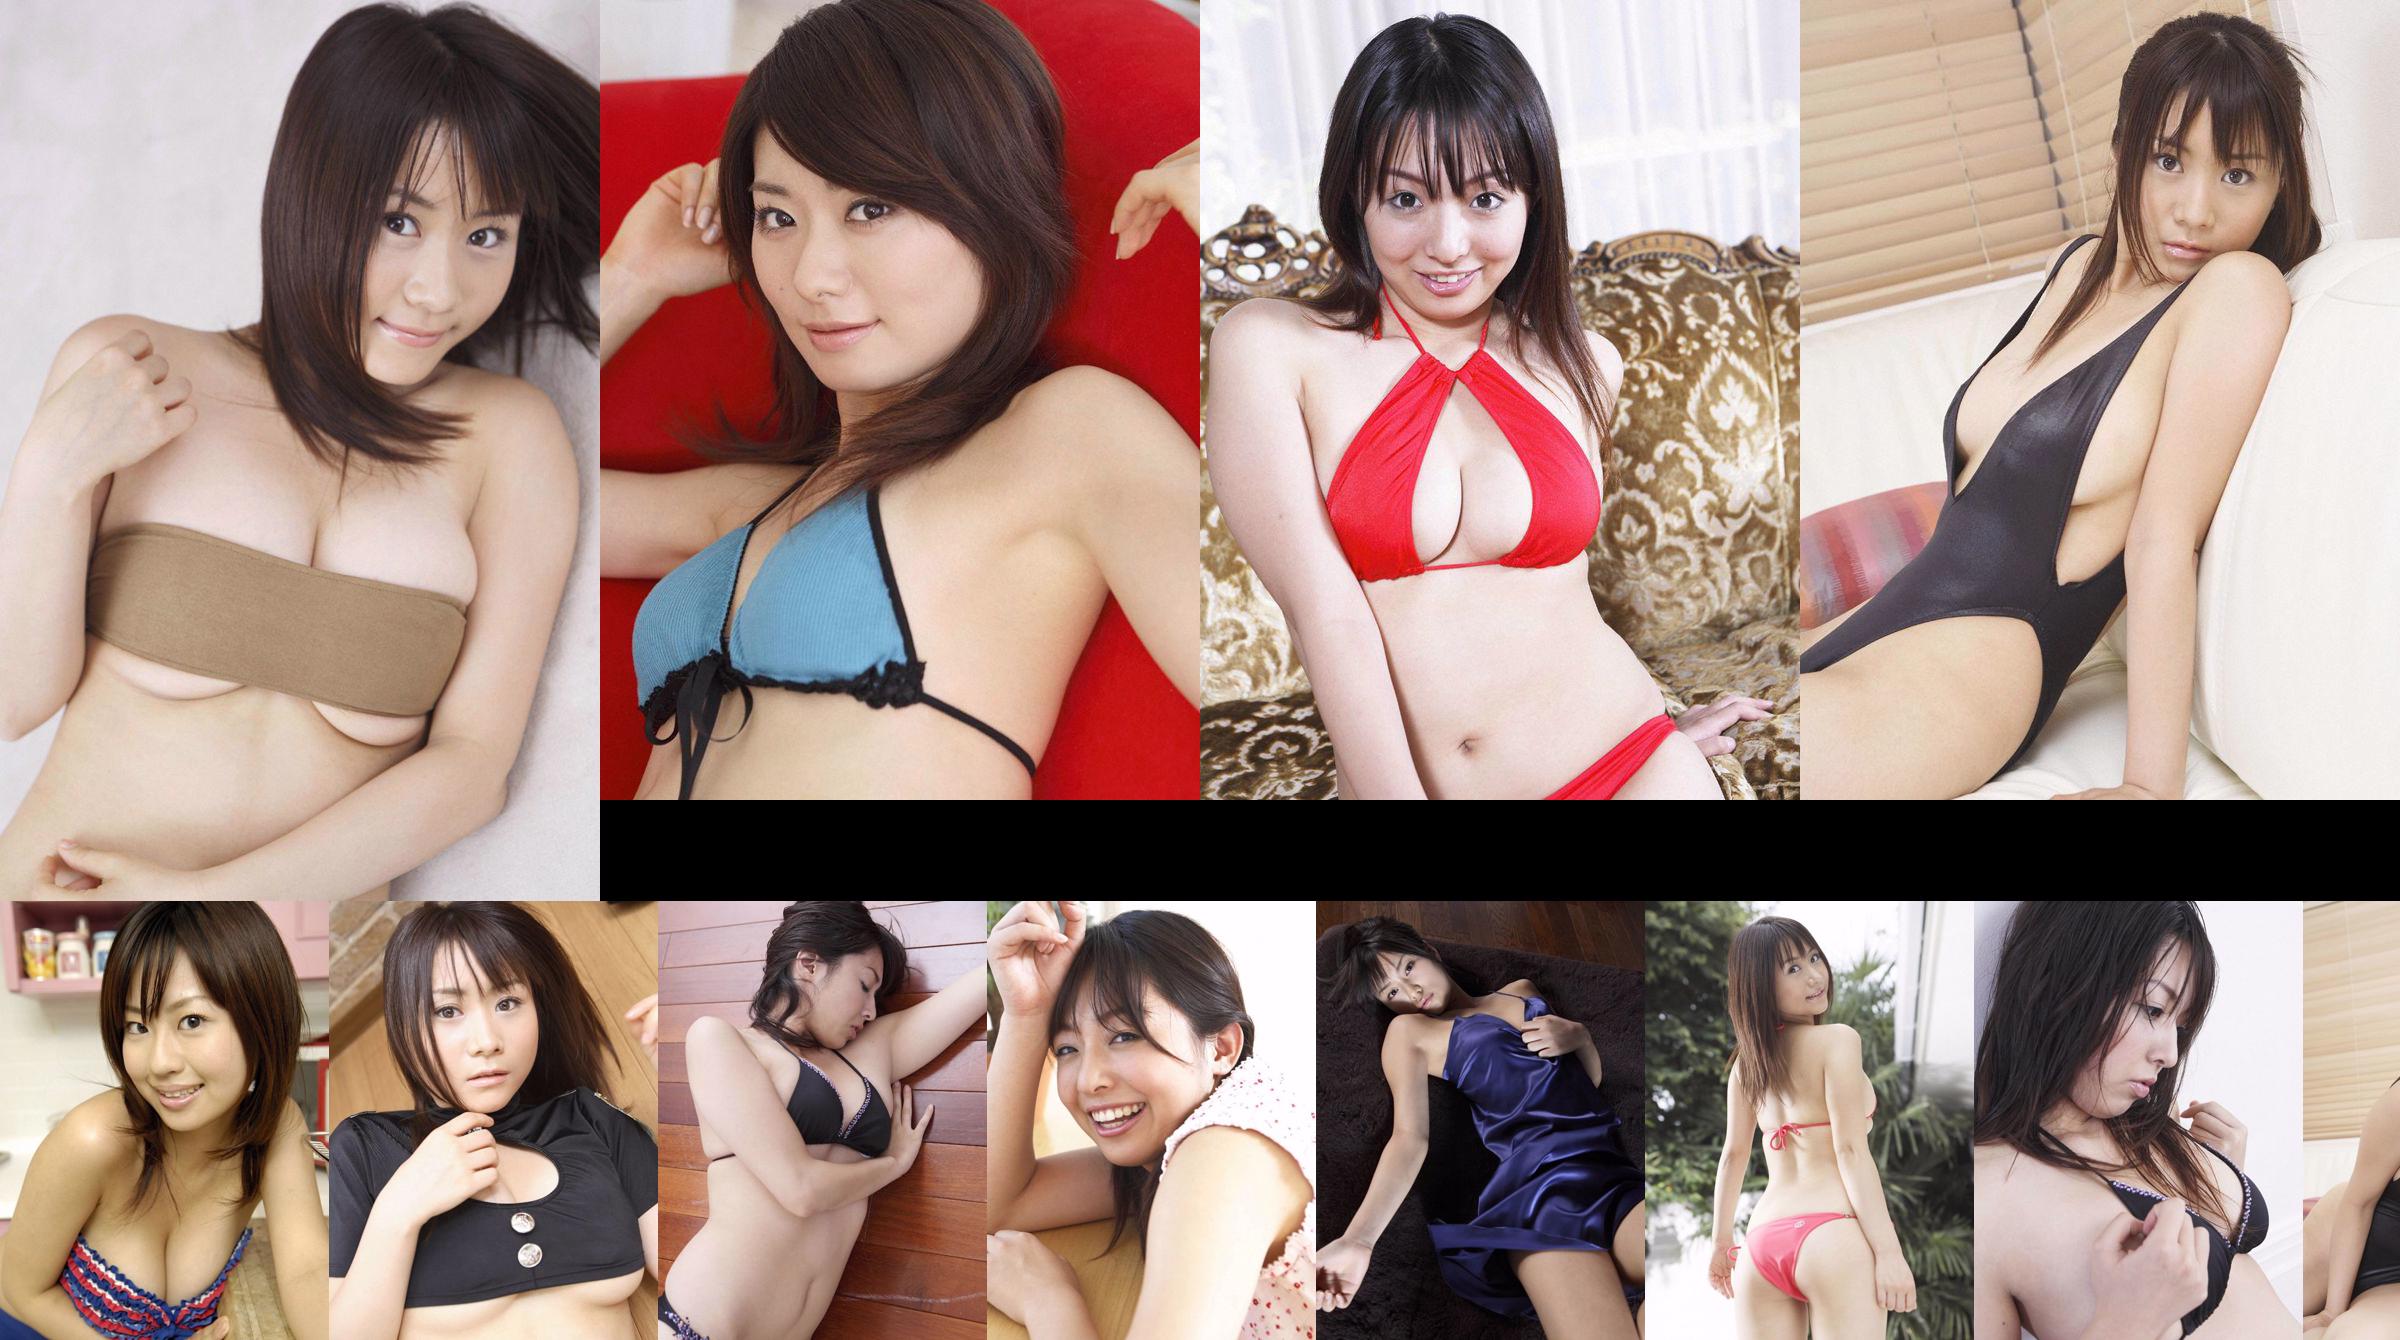 [Wanibooks] NO.37 Ai Arakawa, Hitomi Kaikawa, Hitomi Kitamura, Naomi I, Chii Matsuda Photo Collection No.ff1d96 Page 3